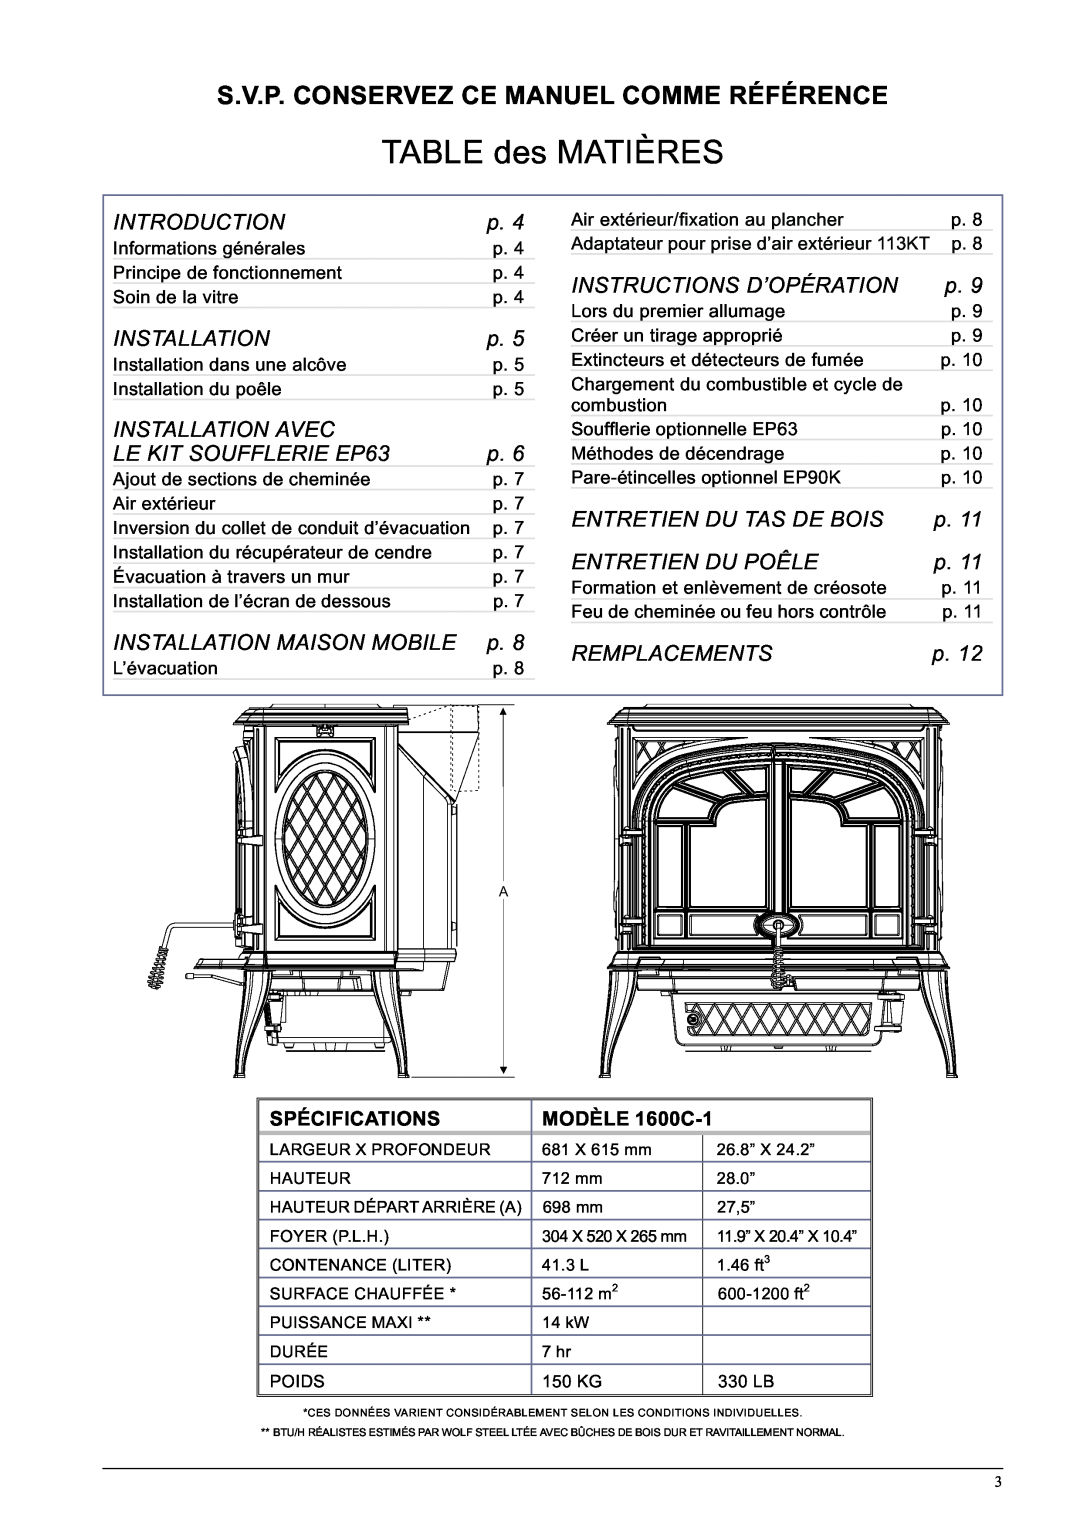 Napoleon Fireplaces 1600C-1 specifications TABLE des MATIÈRES, S.V.P. Conservez Ce Manuel Comme Référence 